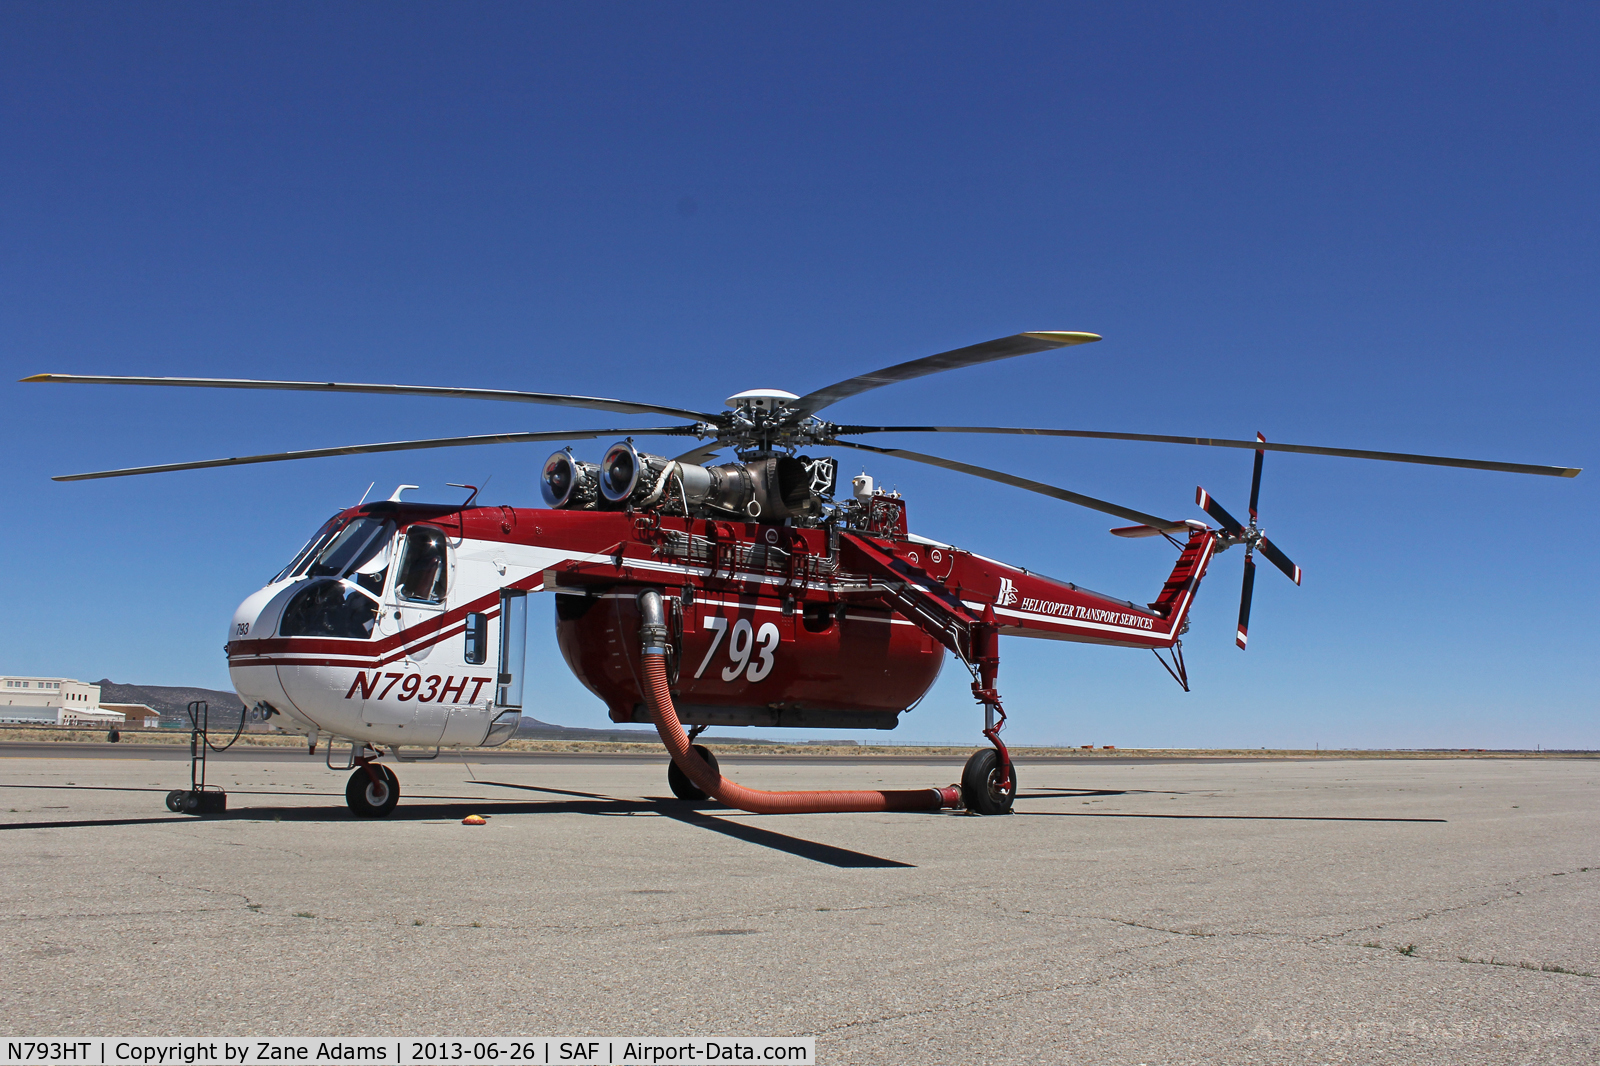 N793HT, Sikorsky S64 C/N 67-18427, N793HT - Jaroso fire, Cowles, NM - June 2013